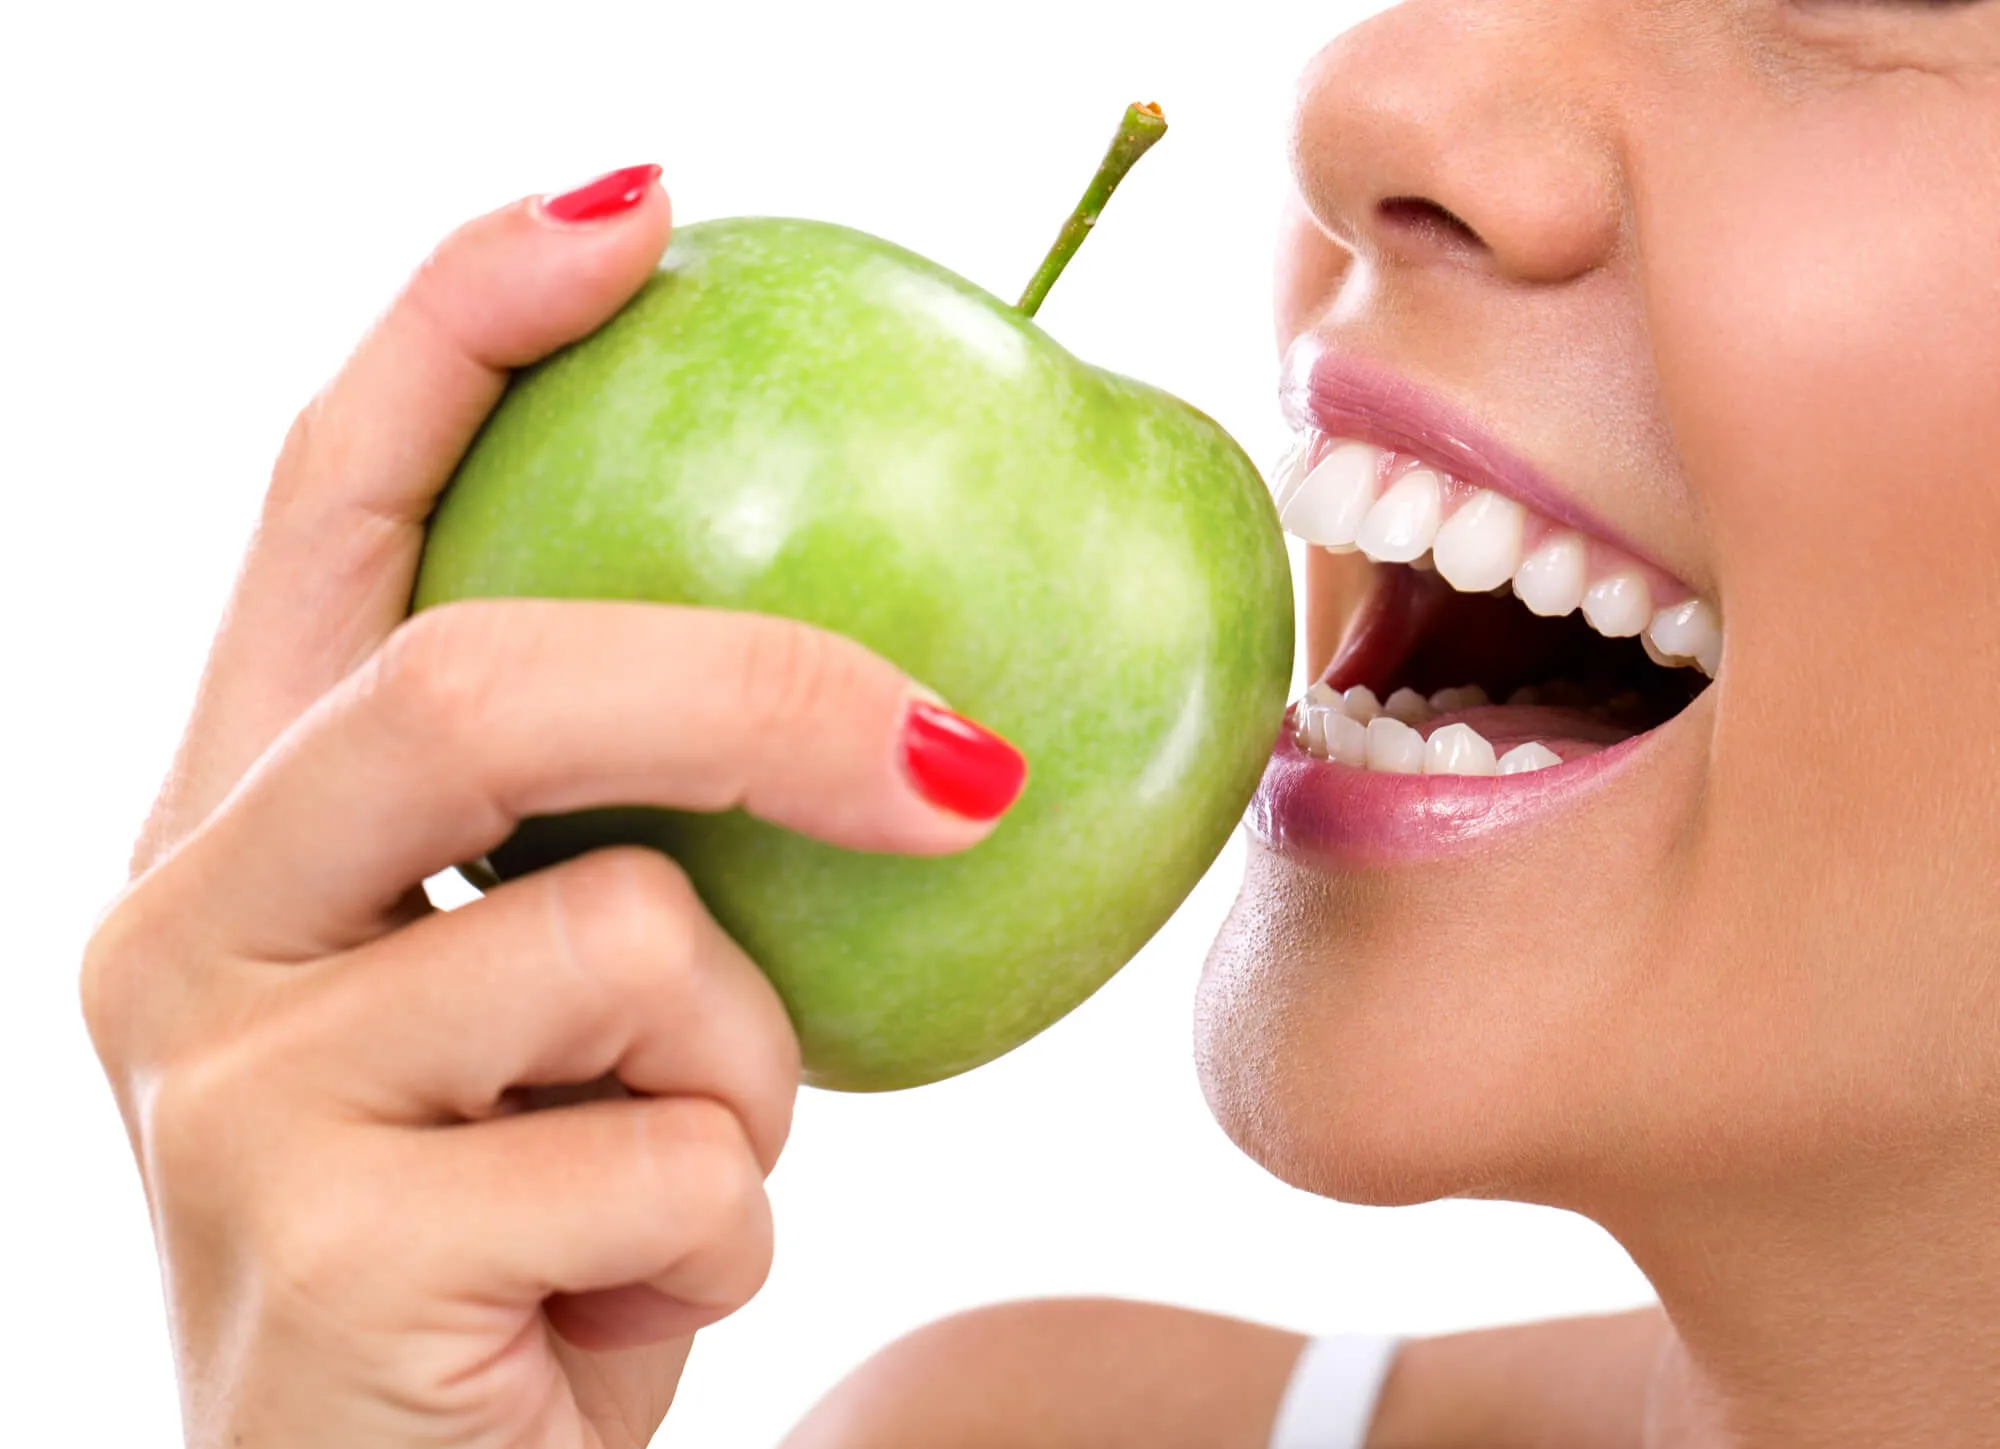 Chức năng nhai, nghiền và cắn xé thức ăn của hàm răng